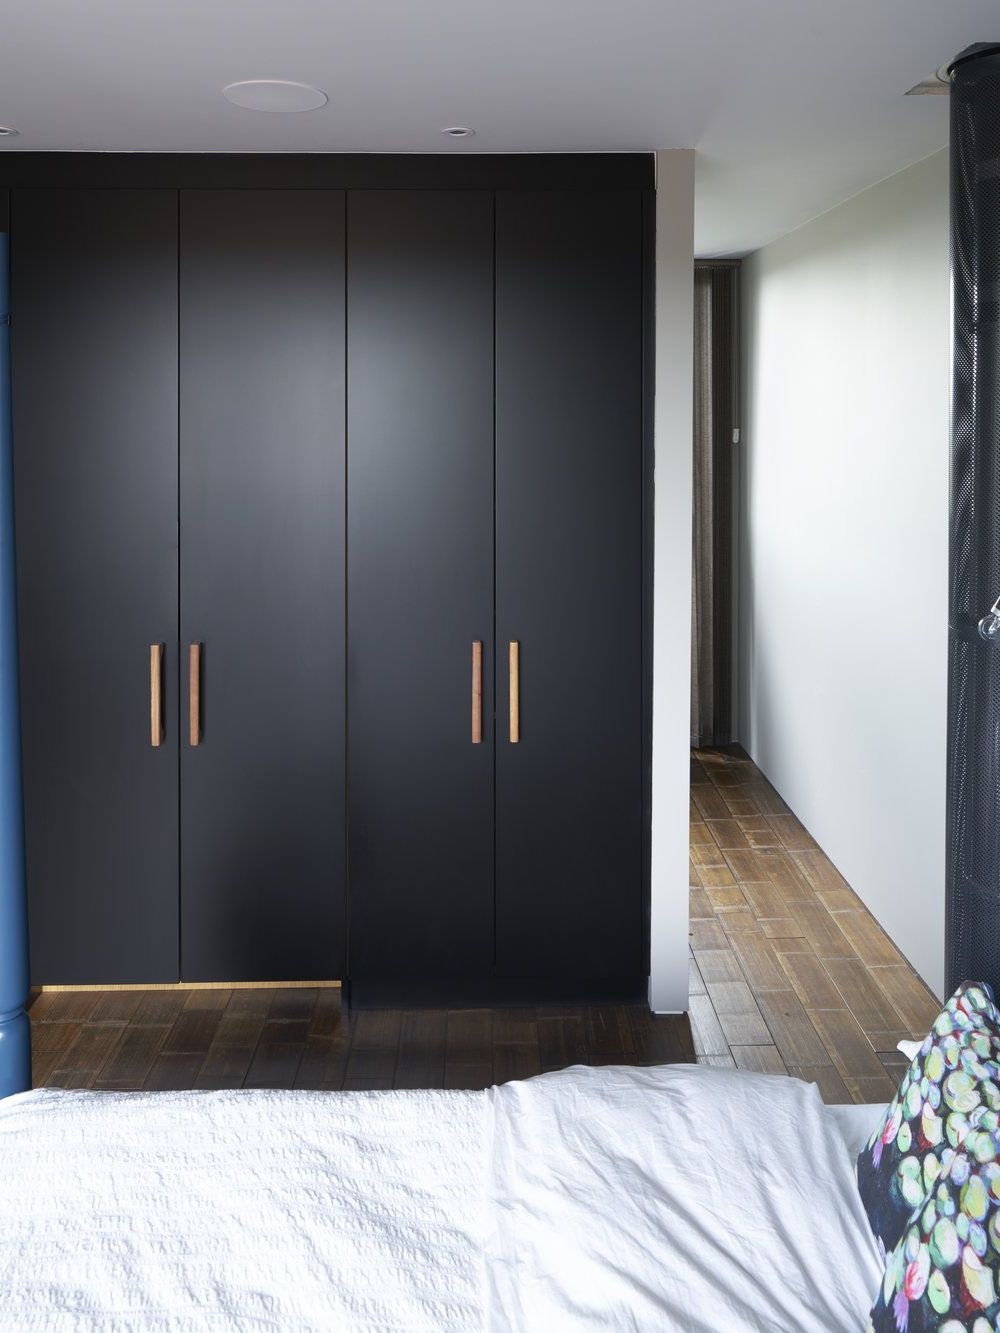 Black Matt Lacquer Wardrobes With Bespoke Oak Handles | Bedroom Cupboards,  Bedroom Closet Design, Wall Wardrobe Design With Black Wardrobes (Gallery 9 of 20)